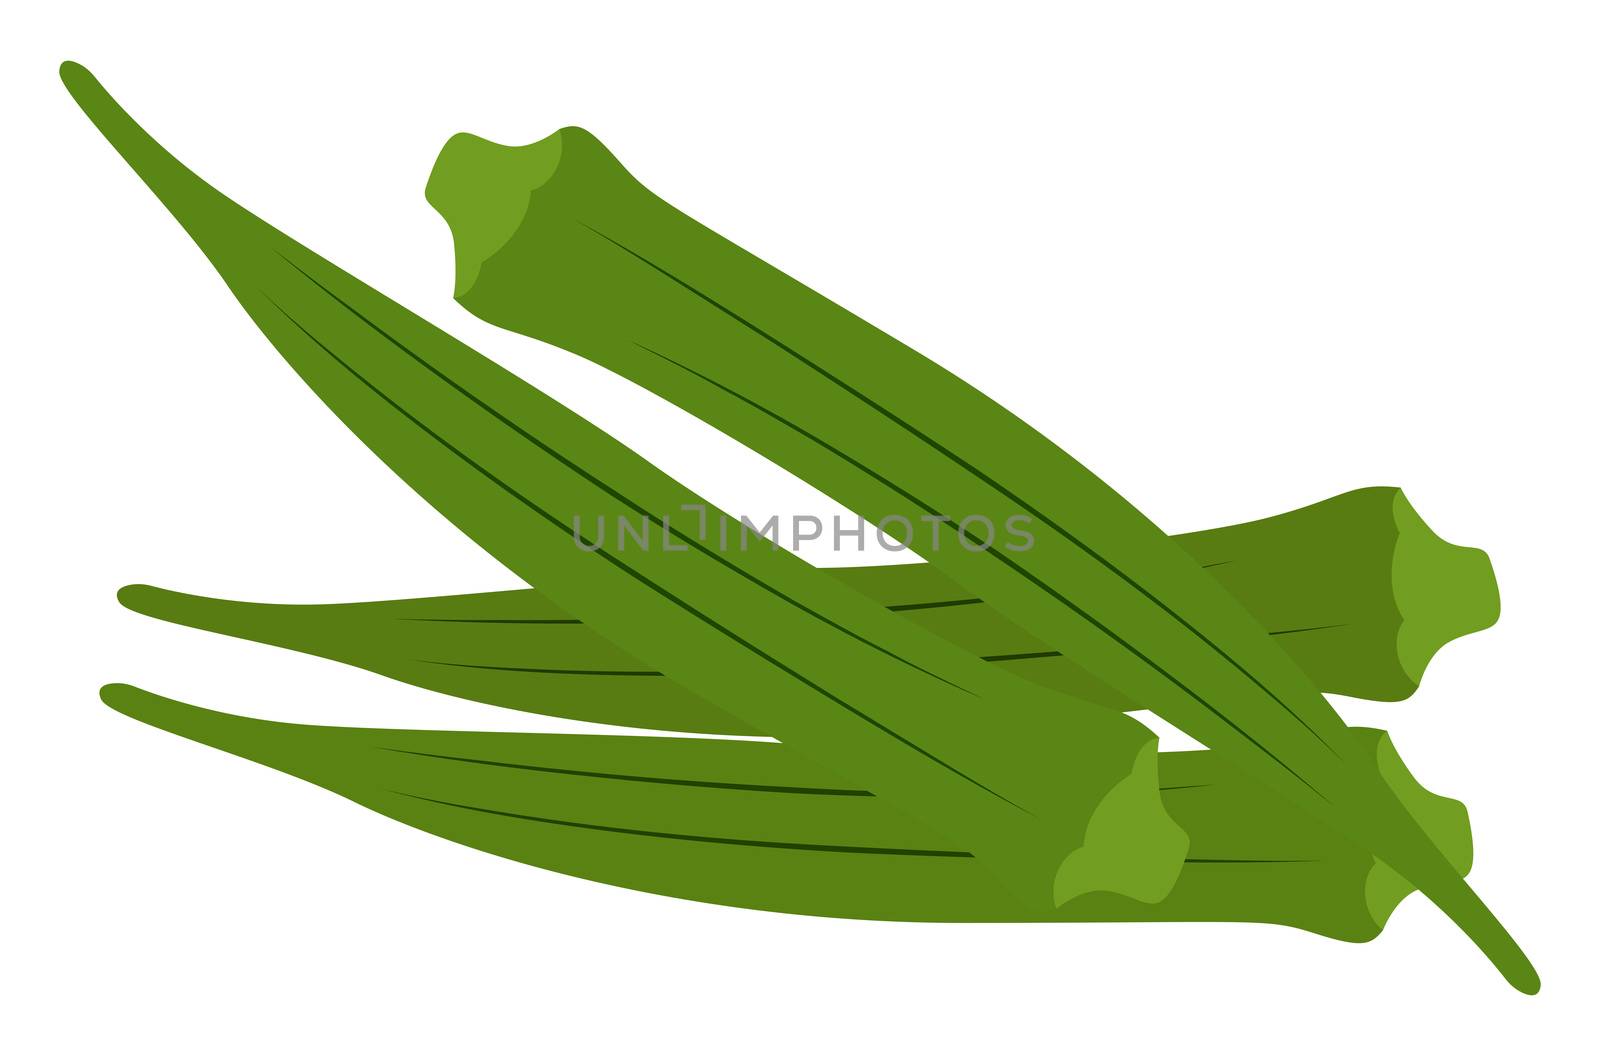 Green okra, illustration, vector on white background